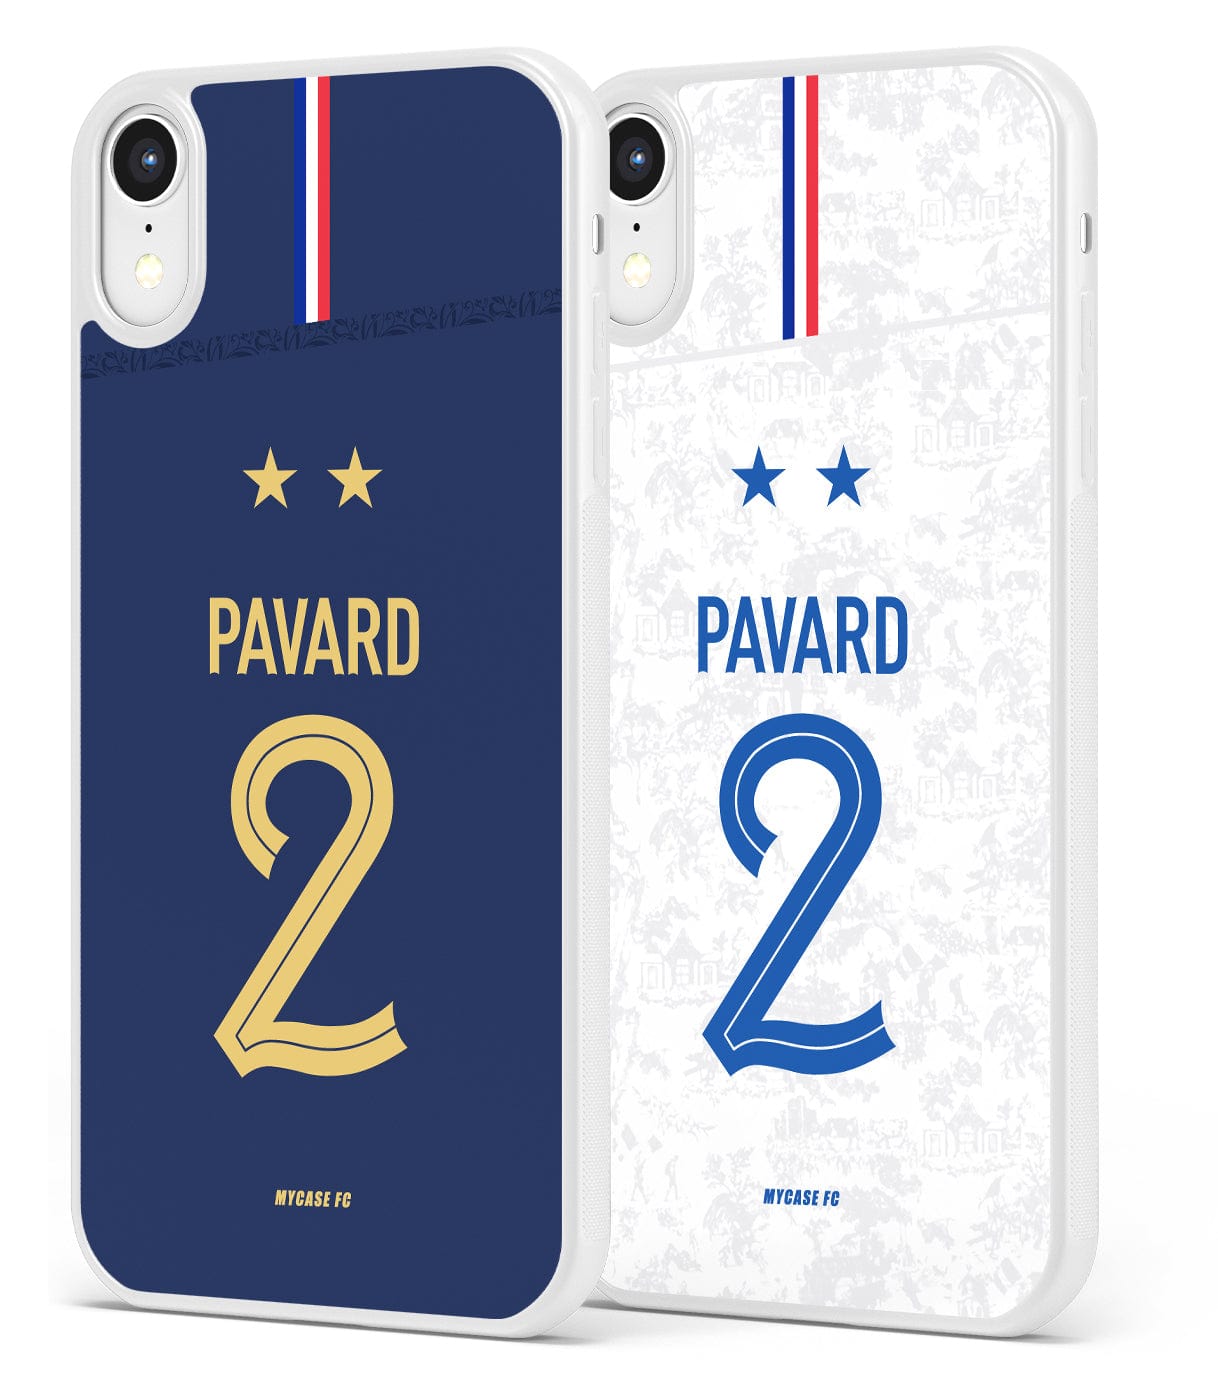 FRANCE - PAVARD - MYCASE FC